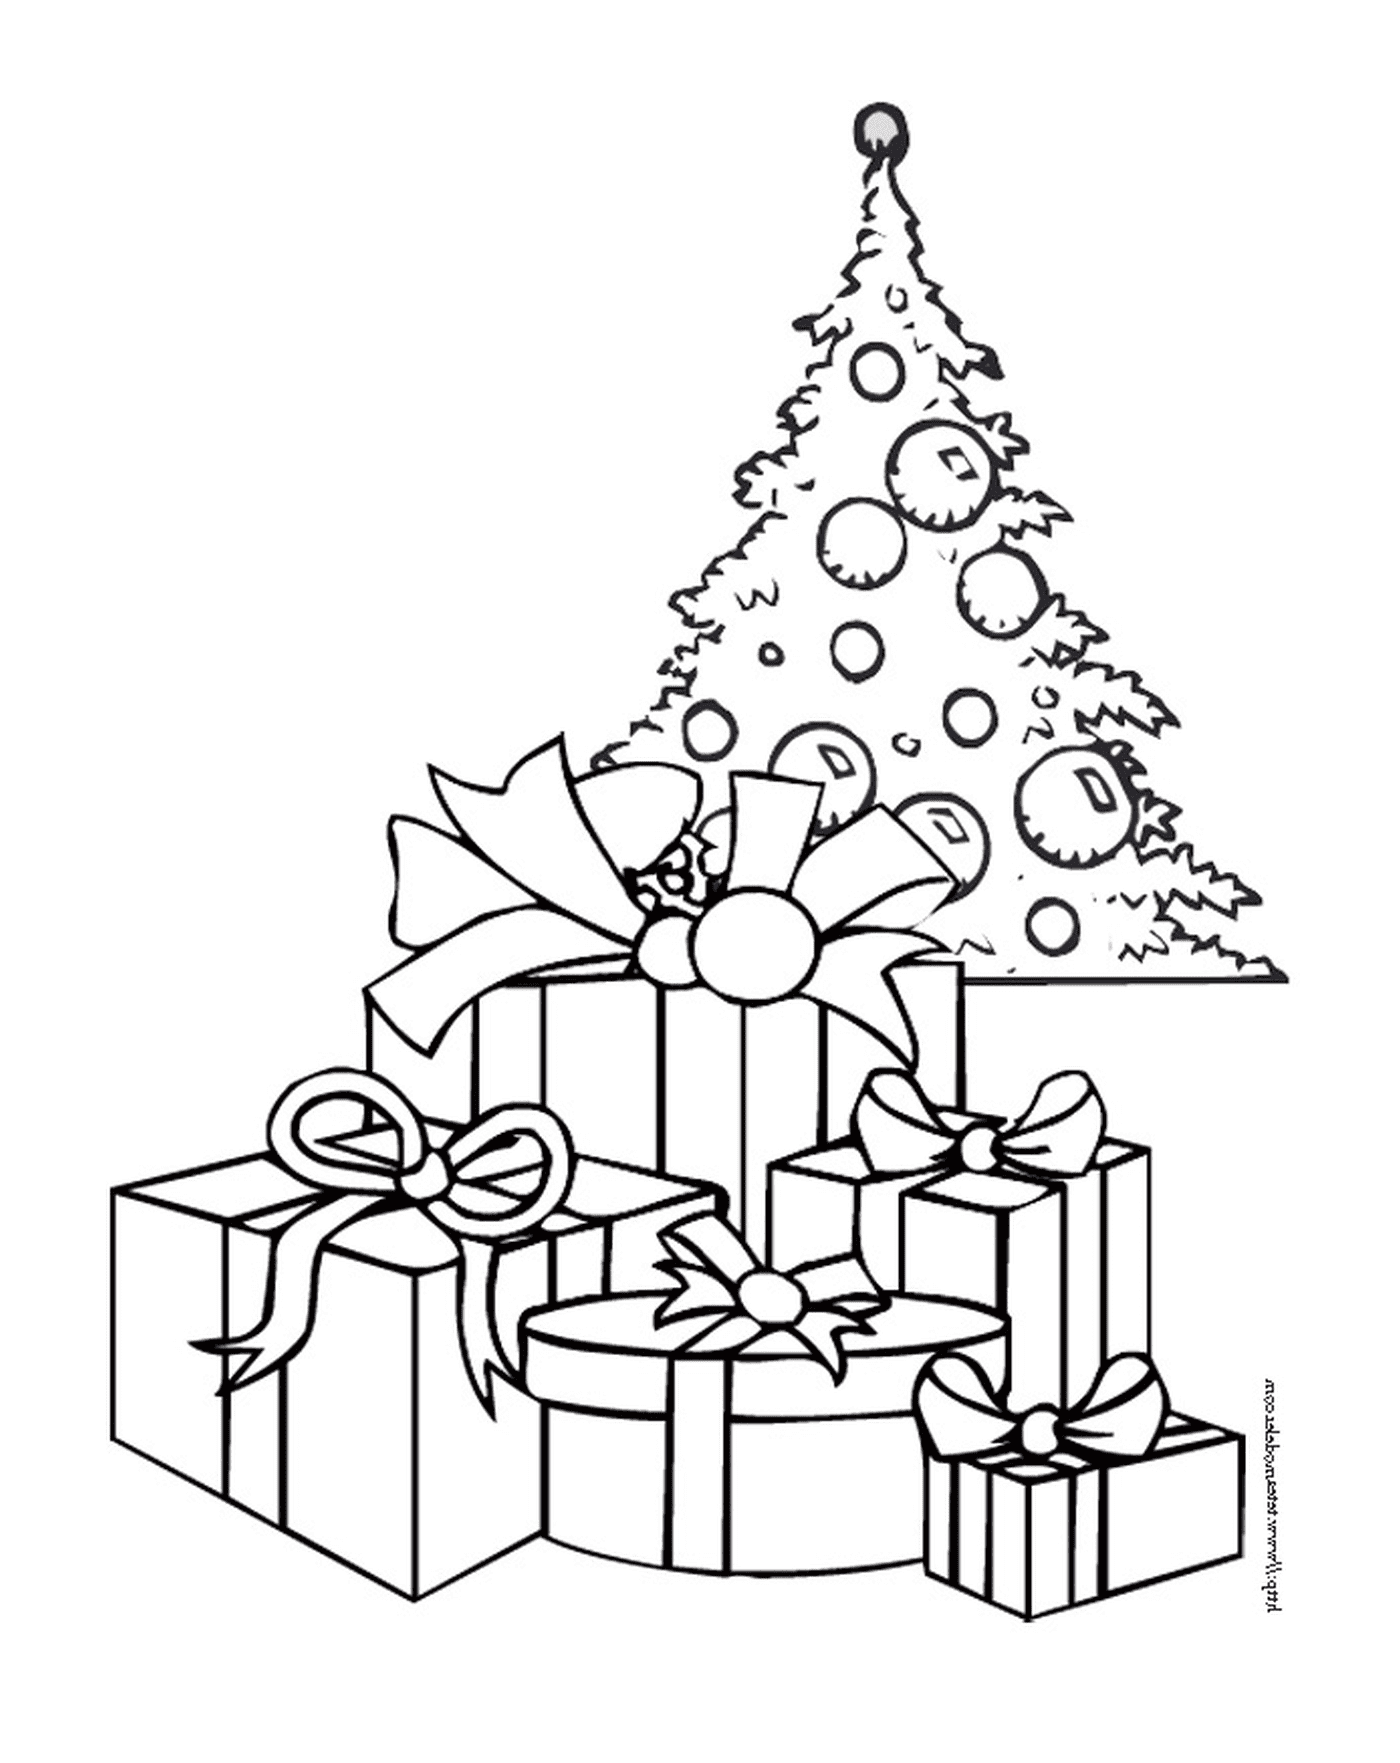  Uma árvore de Natal com presentes no andar de cima 